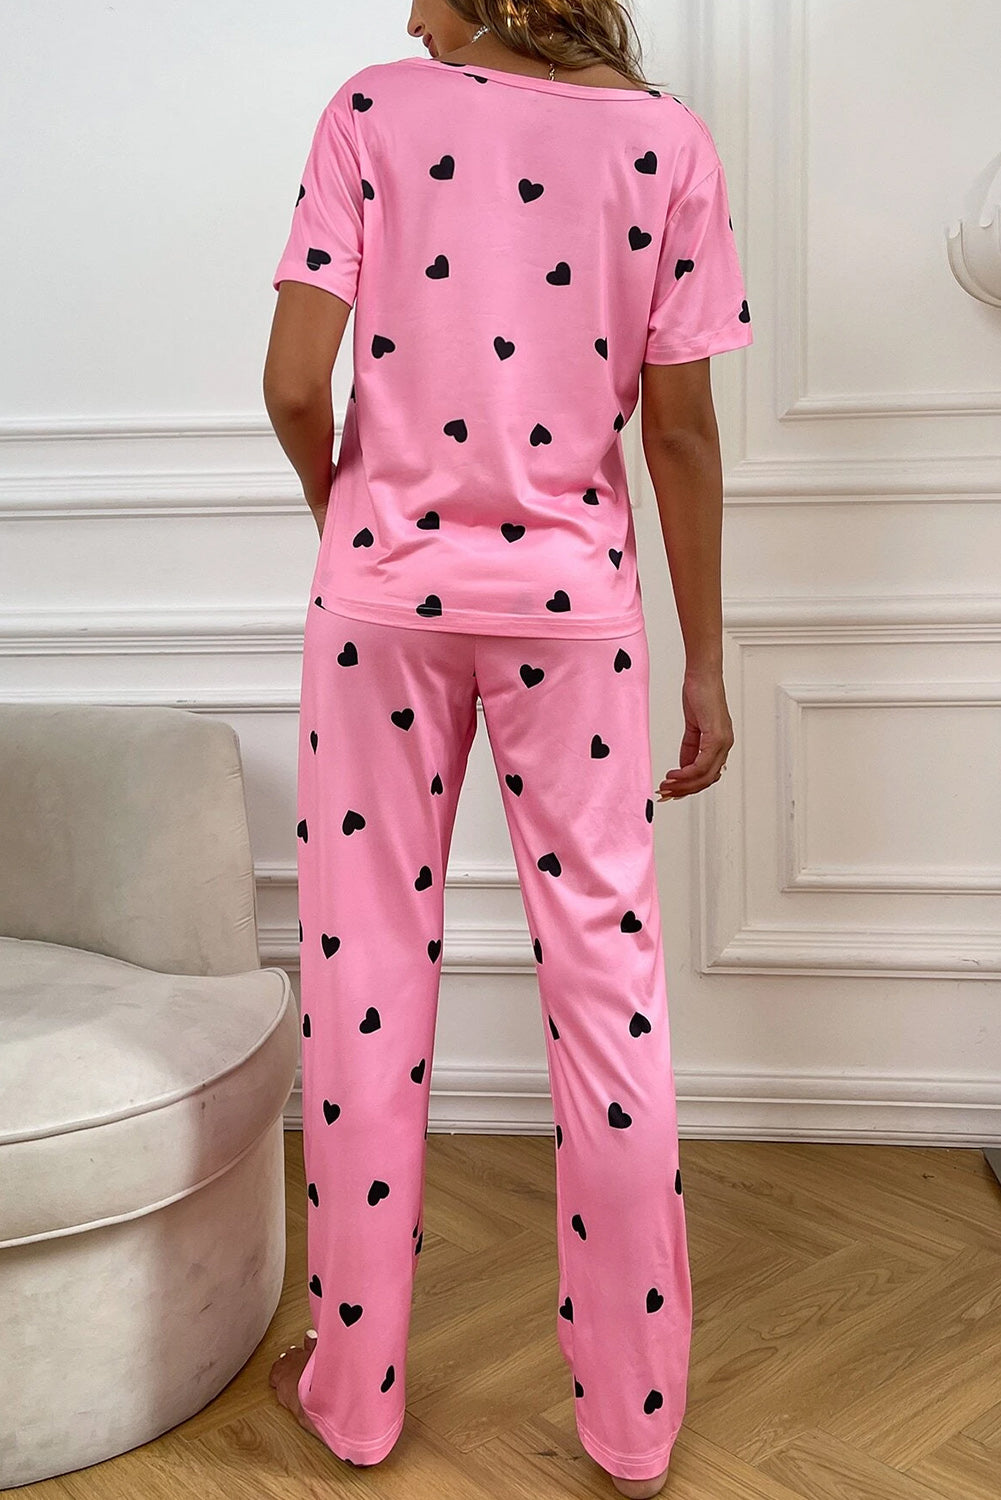 Rožnati salonski komplet majice in hlač s potiskom srčkov za Valentinovo